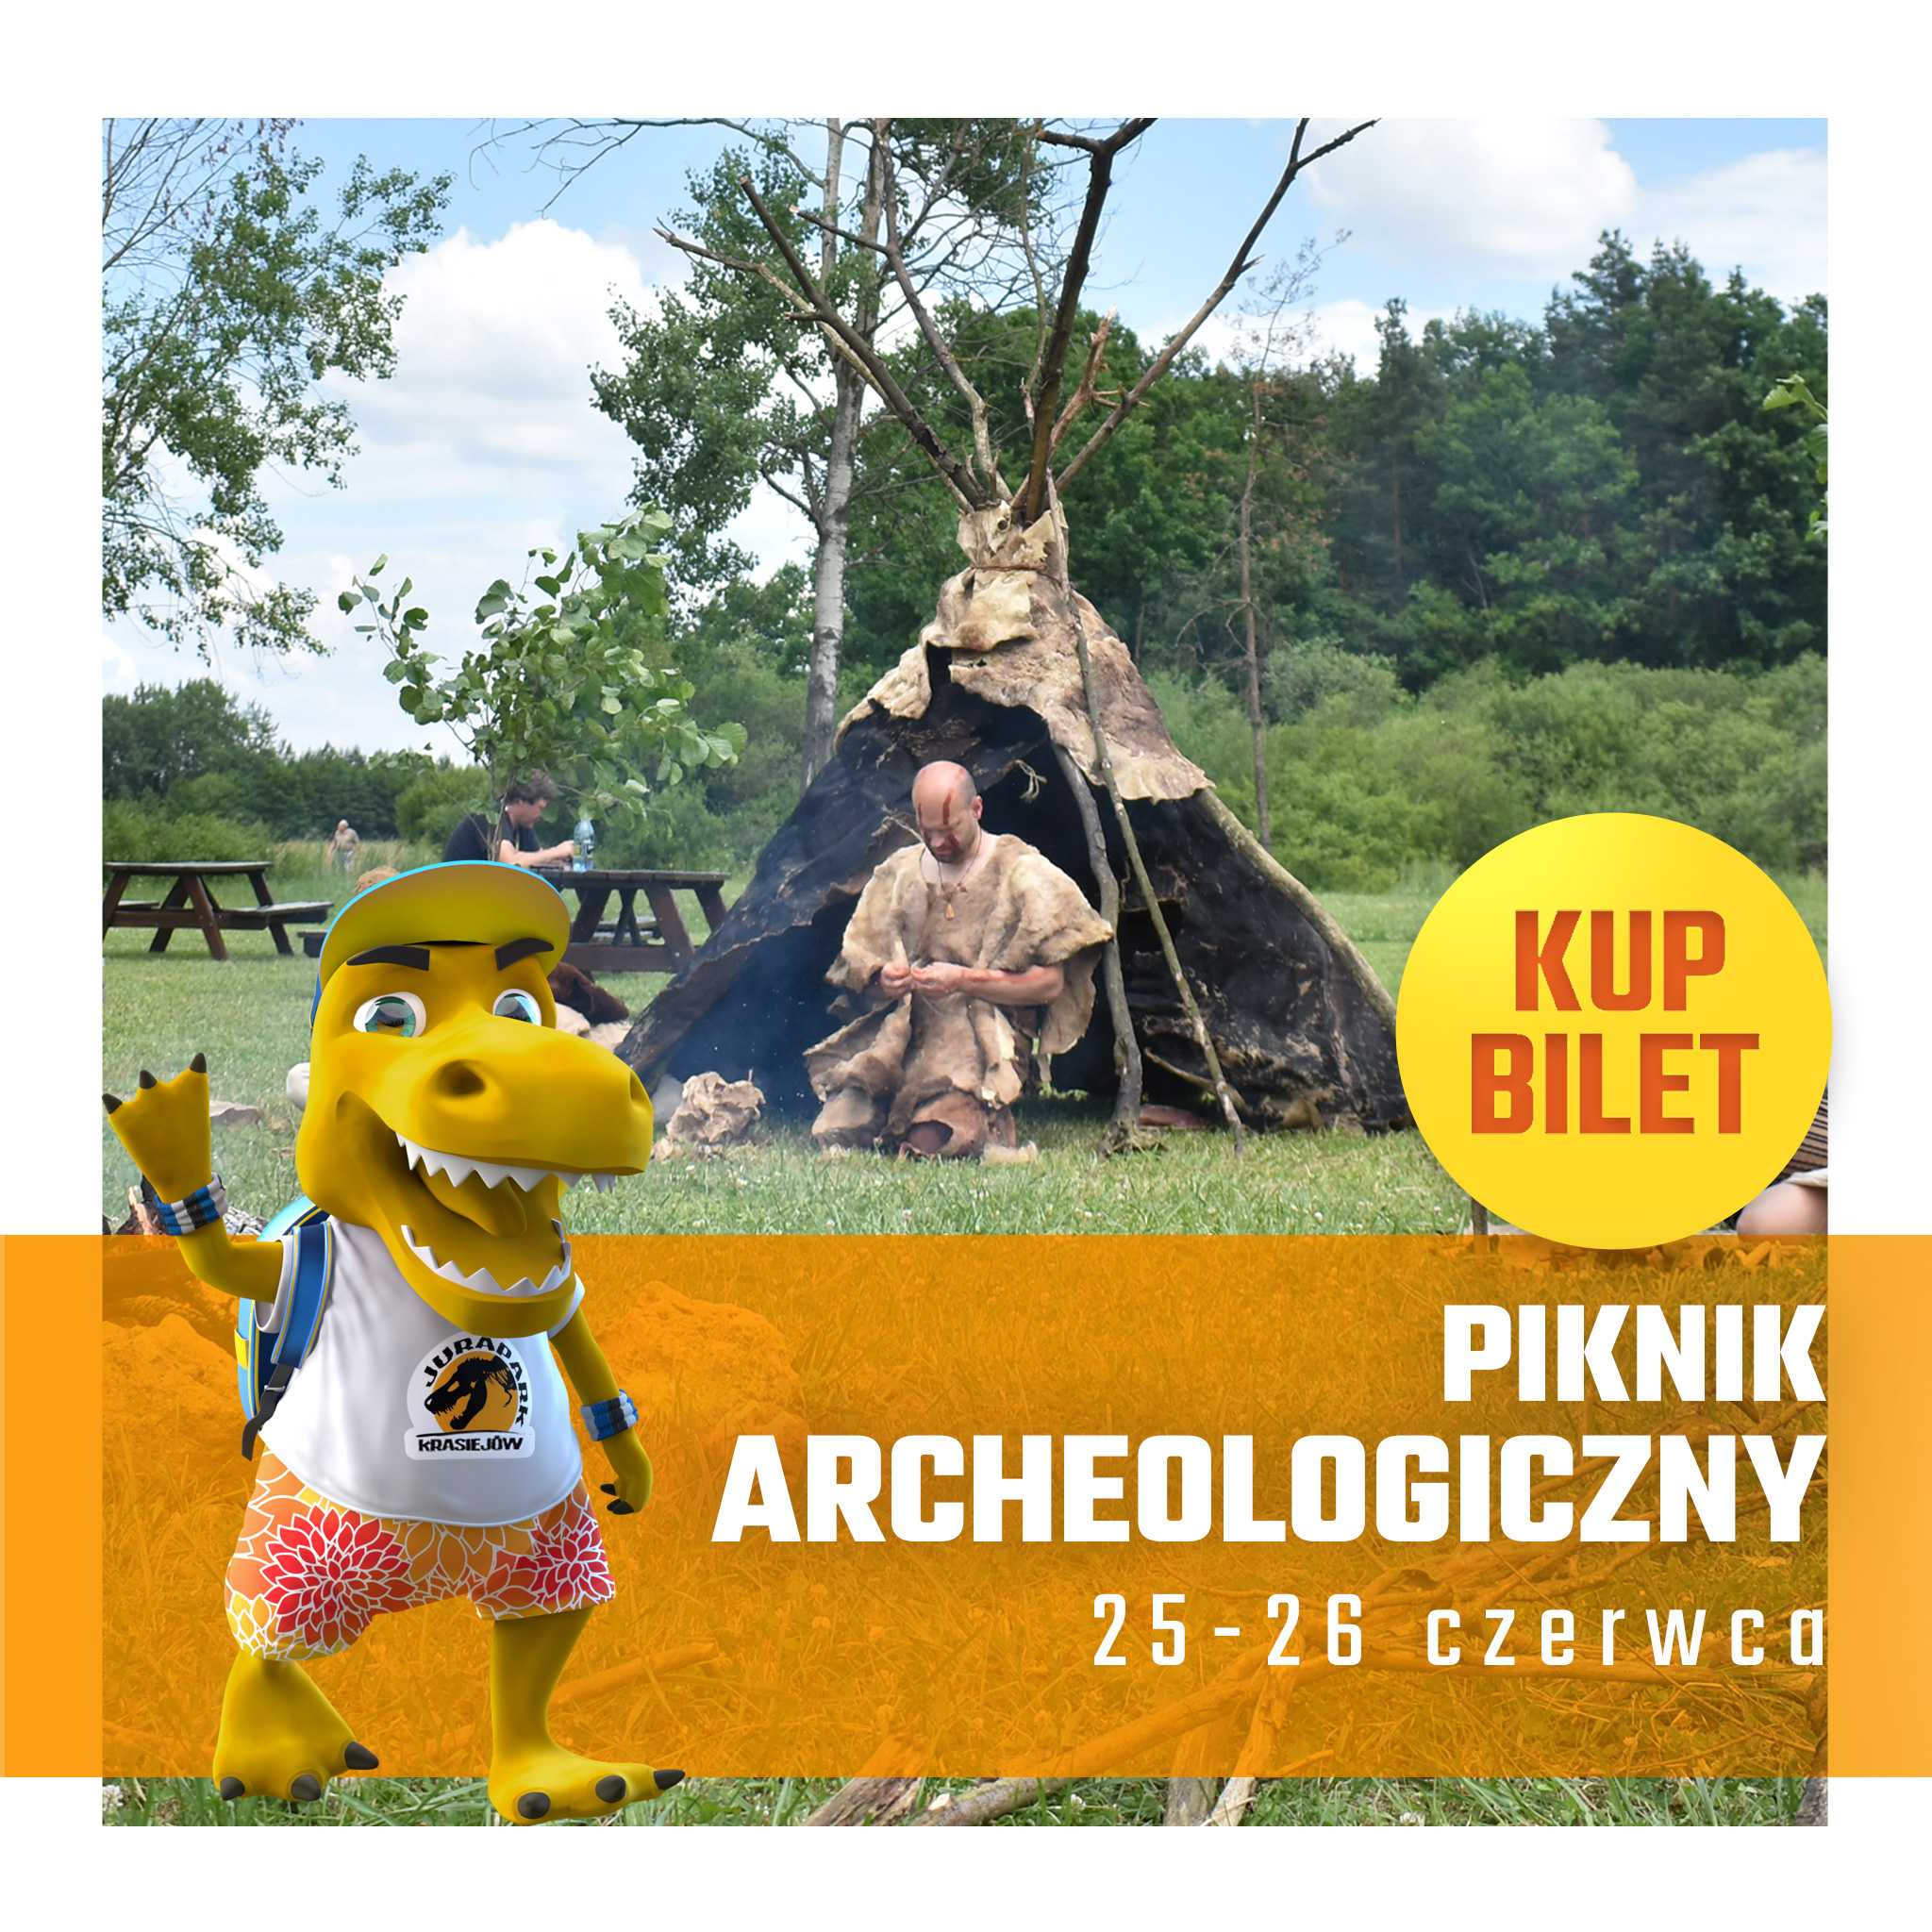 Drugi Piknik Archeologiczny w Juraparku w Krasiejowie już w weekend